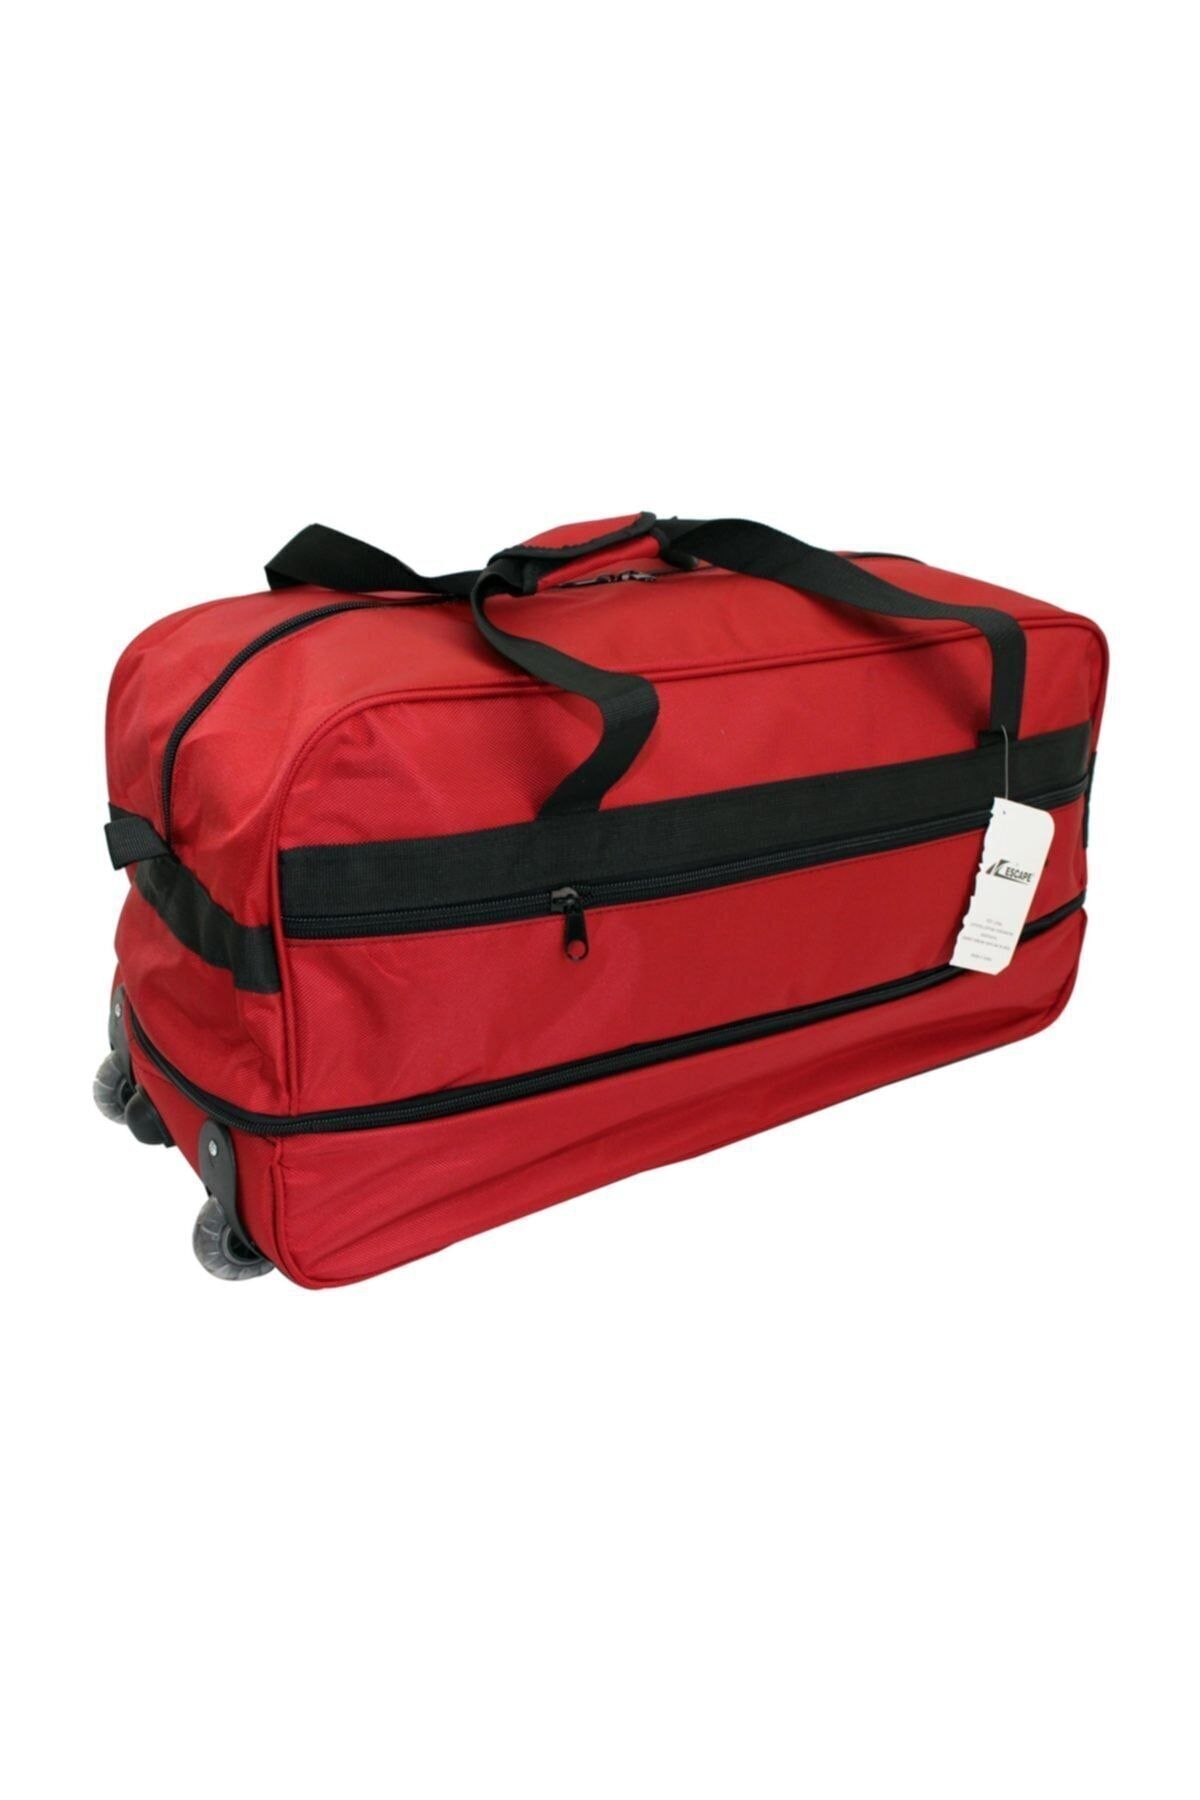 ESCAPE Çek Çekli Valiz Seyahat Çantası Seyahat Bavulu Büyük Boy Kırmızı